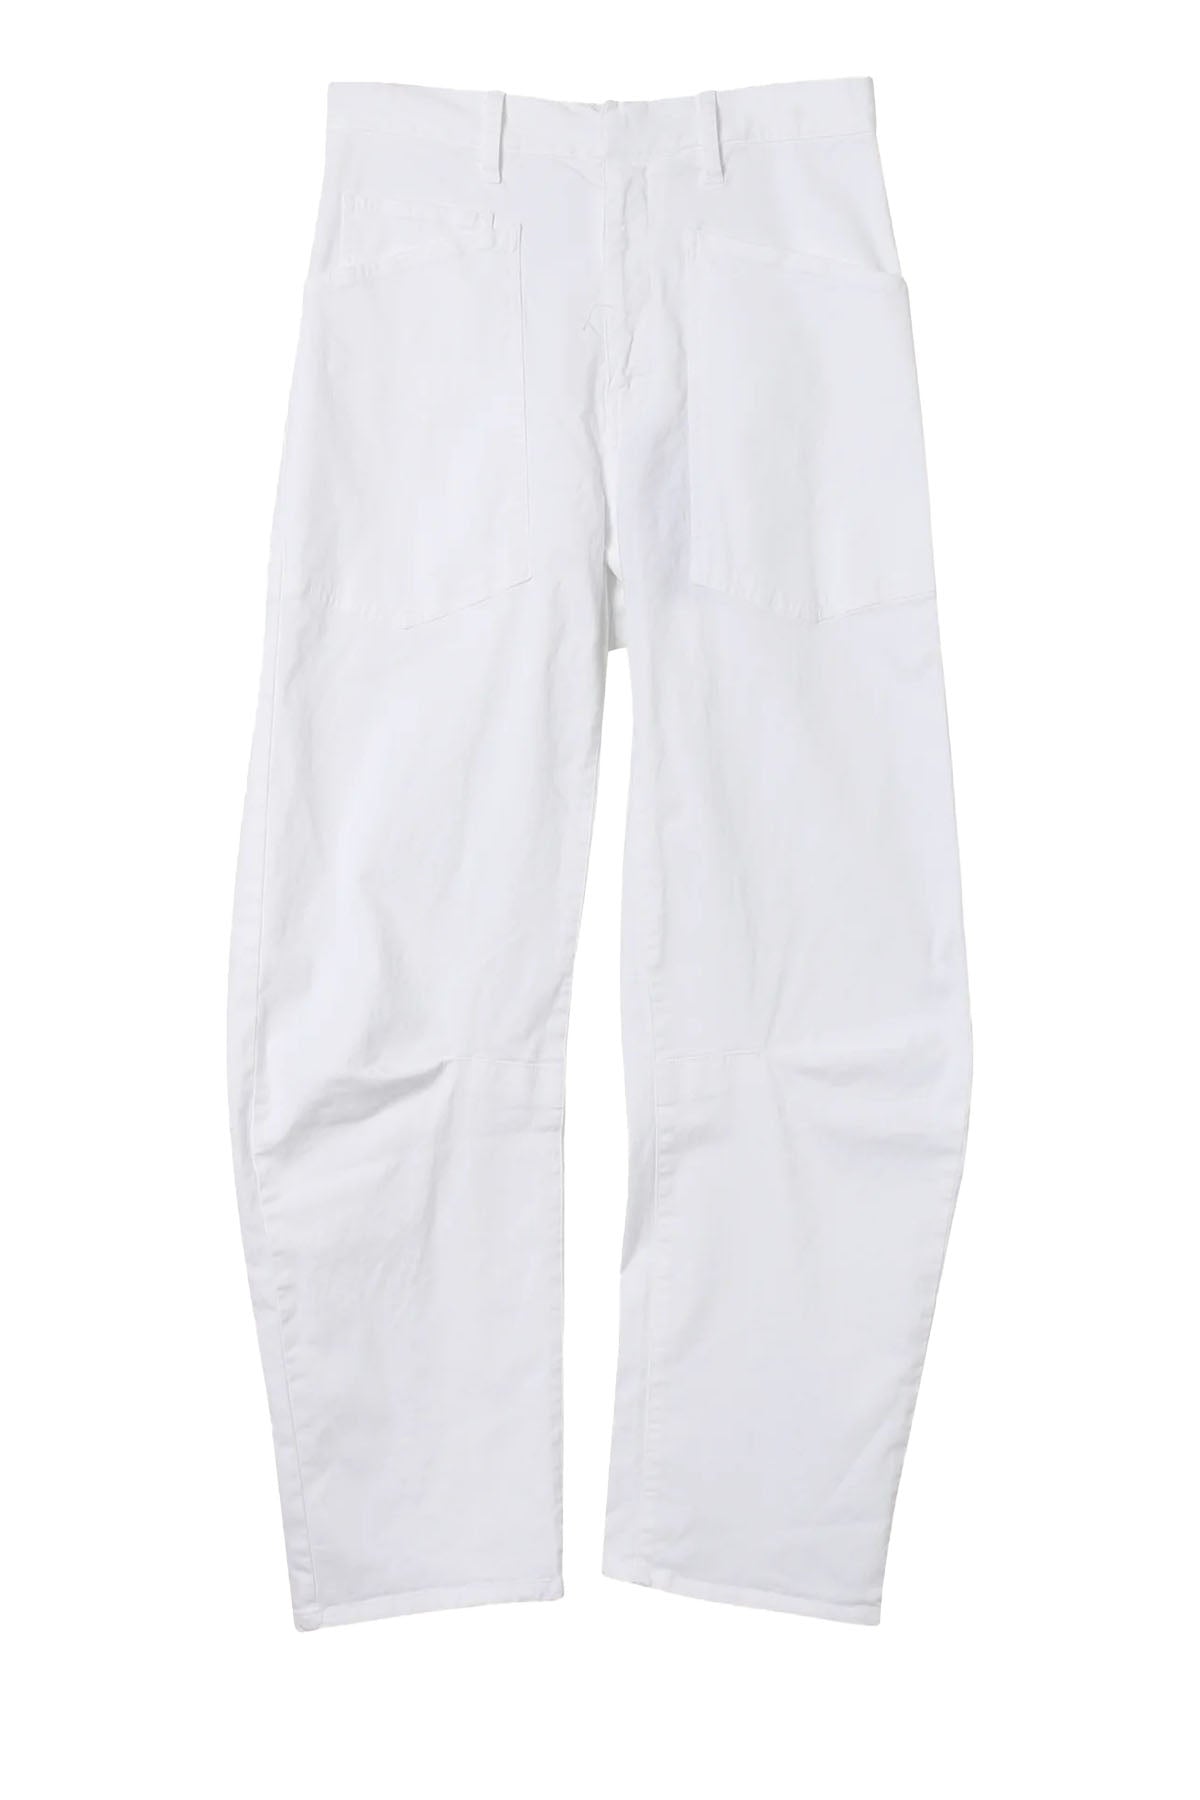 shon pants - white